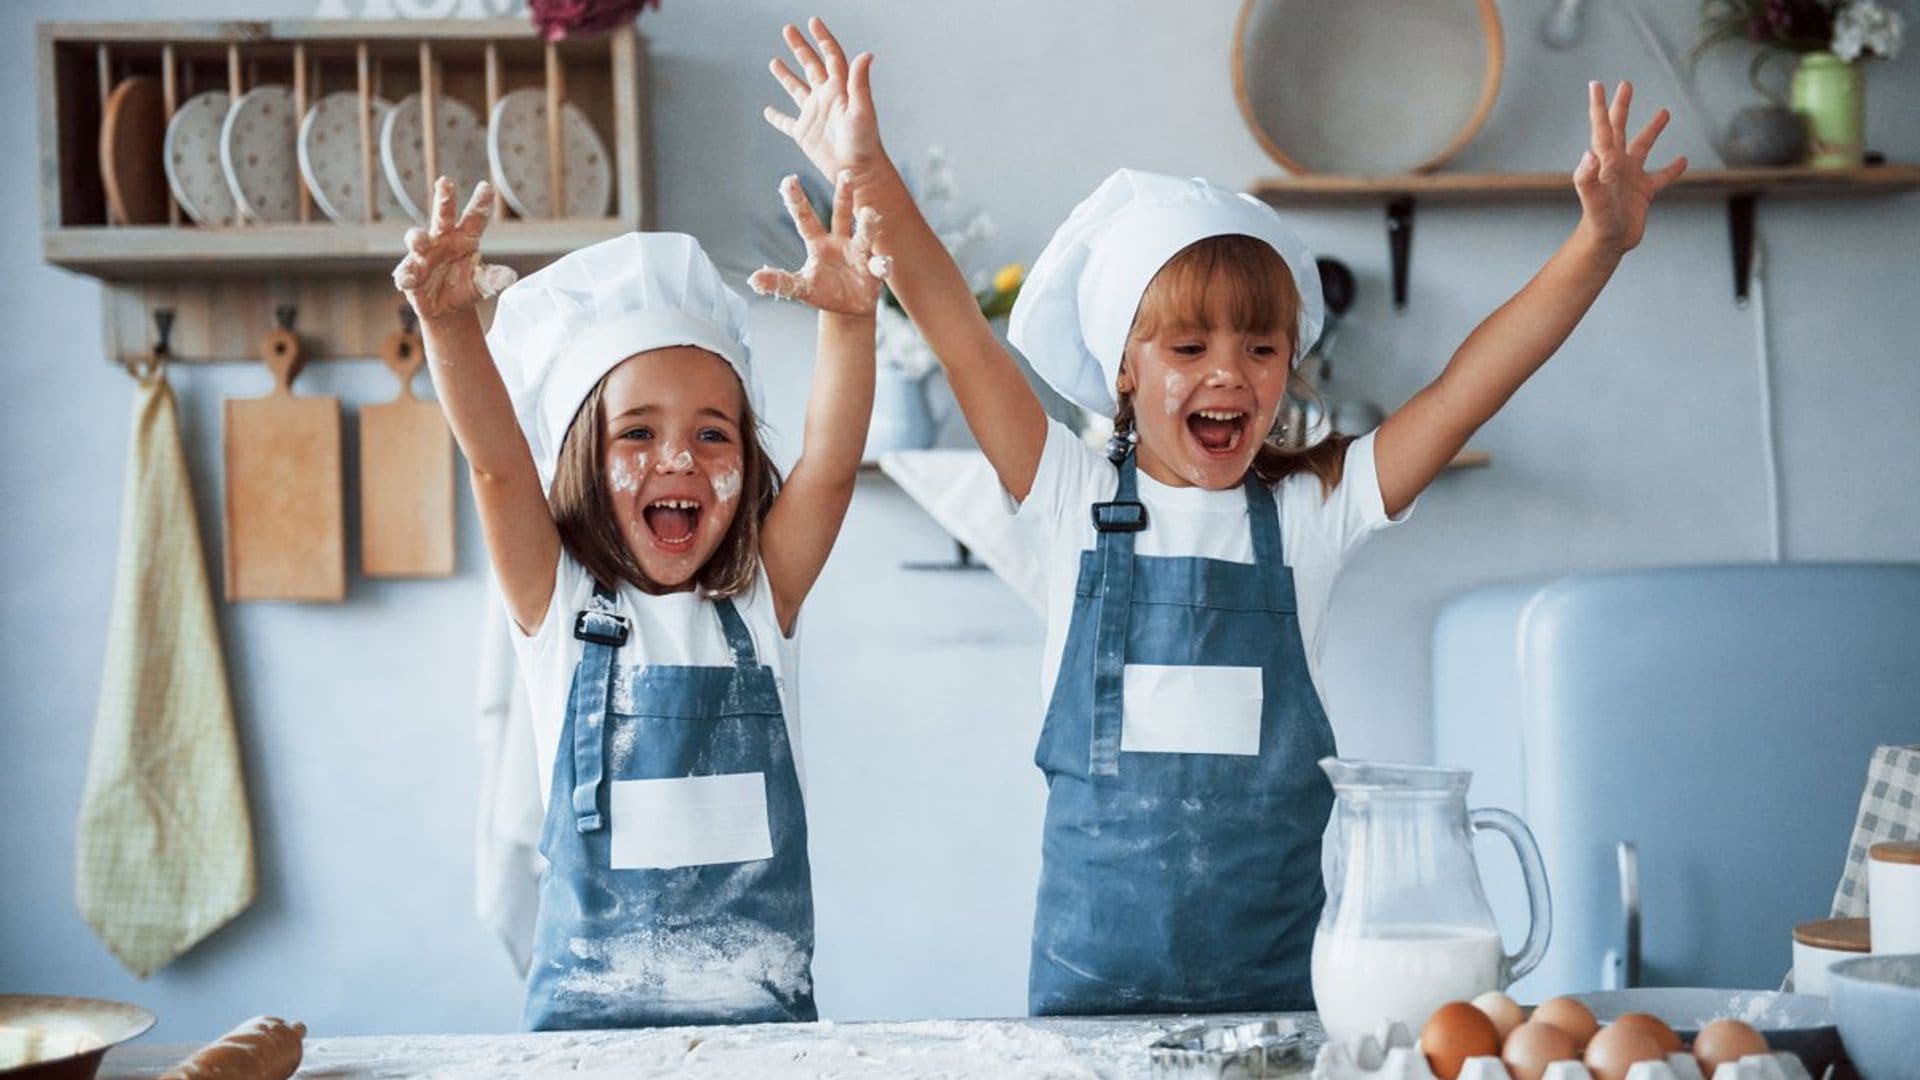 Estimula la autonomía de tus hijos desde la cocina